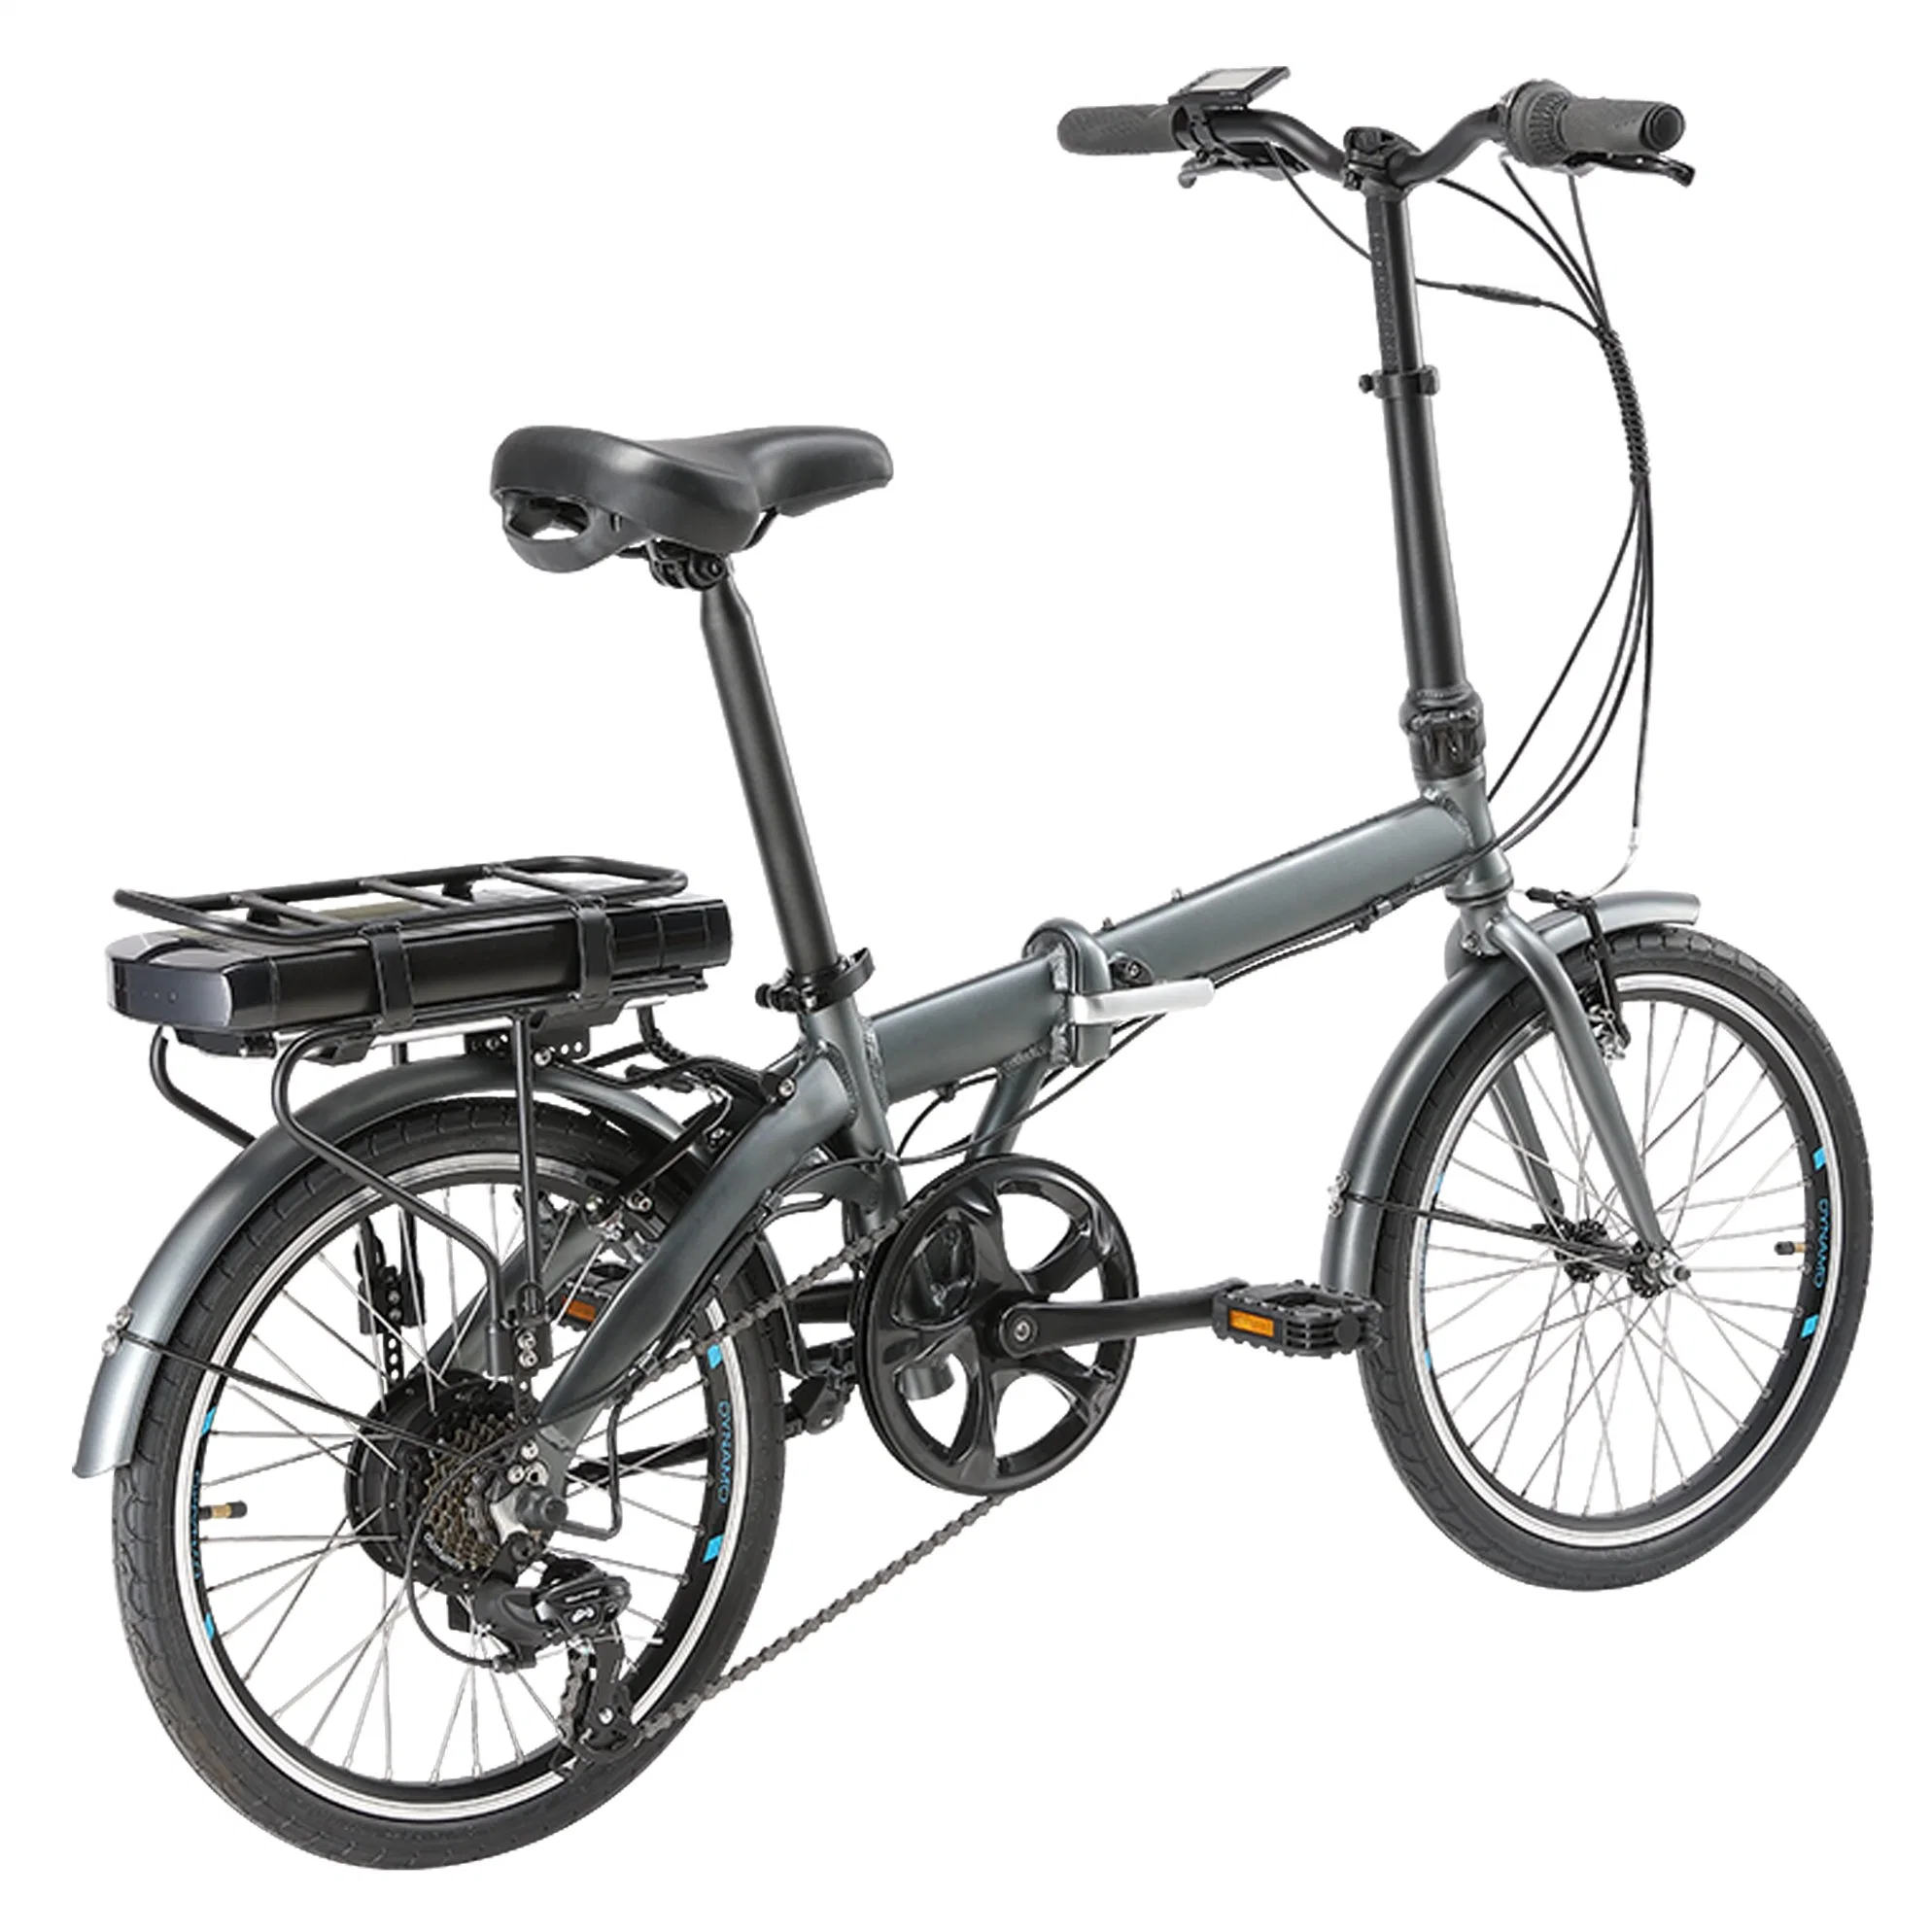 E Scooter Bicycle Folding Adult Electric Scooter

Trottinette électrique pliable pour adulte